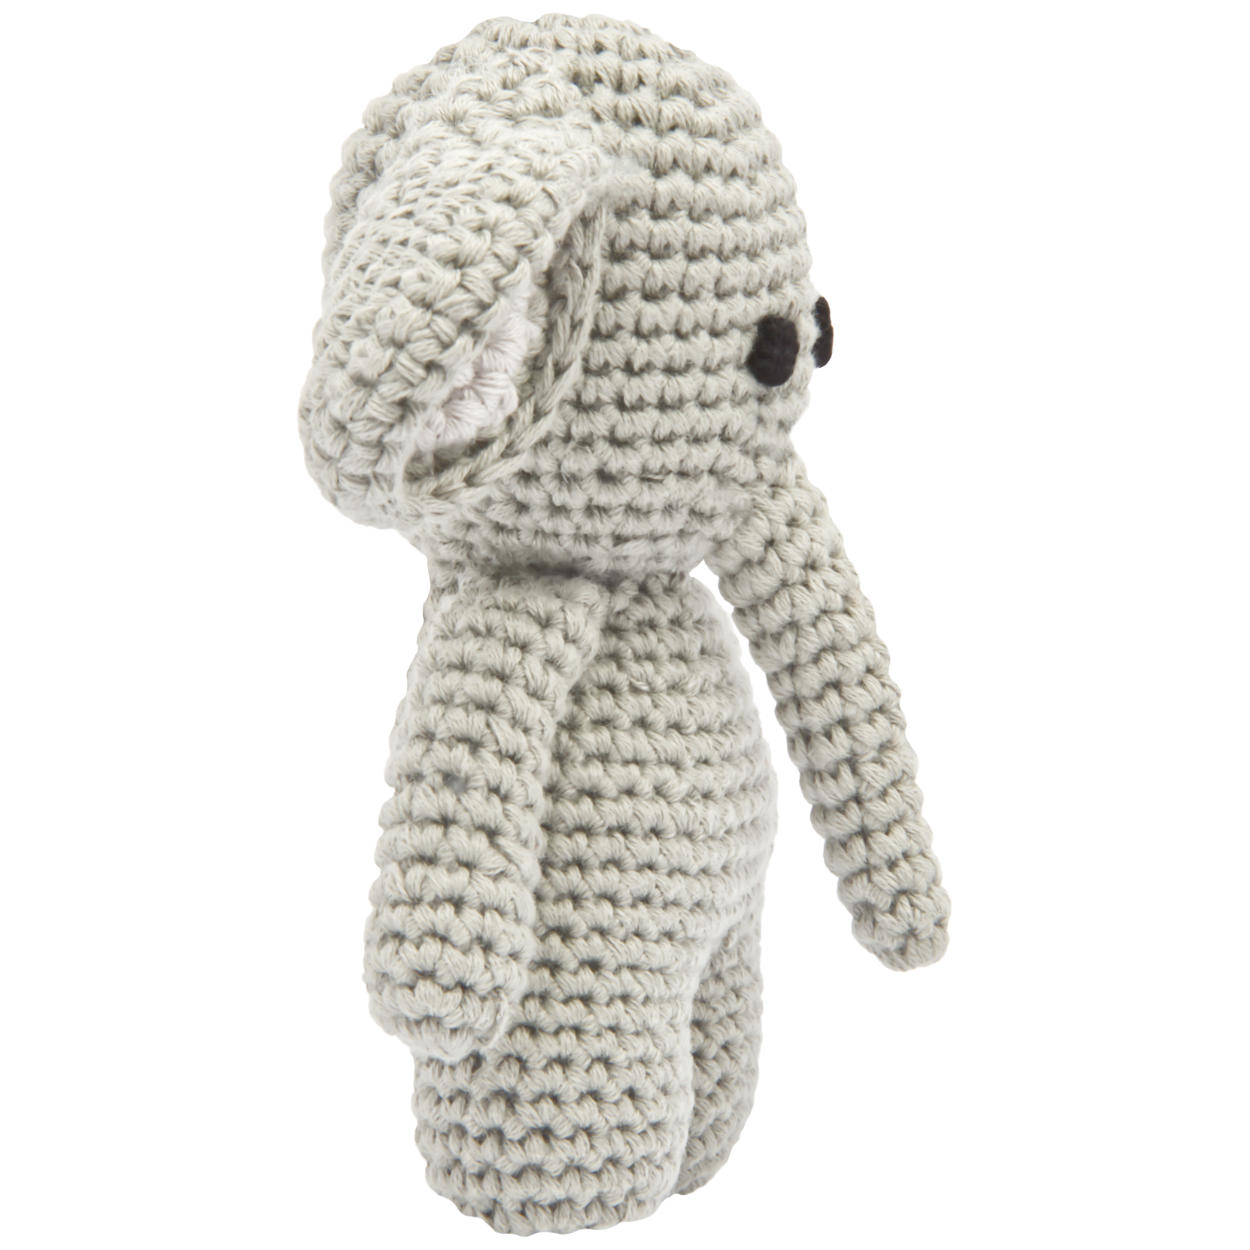 Handgestrickter Elefant gehäkelt aus Baumwolle Spielzeug 15 cm